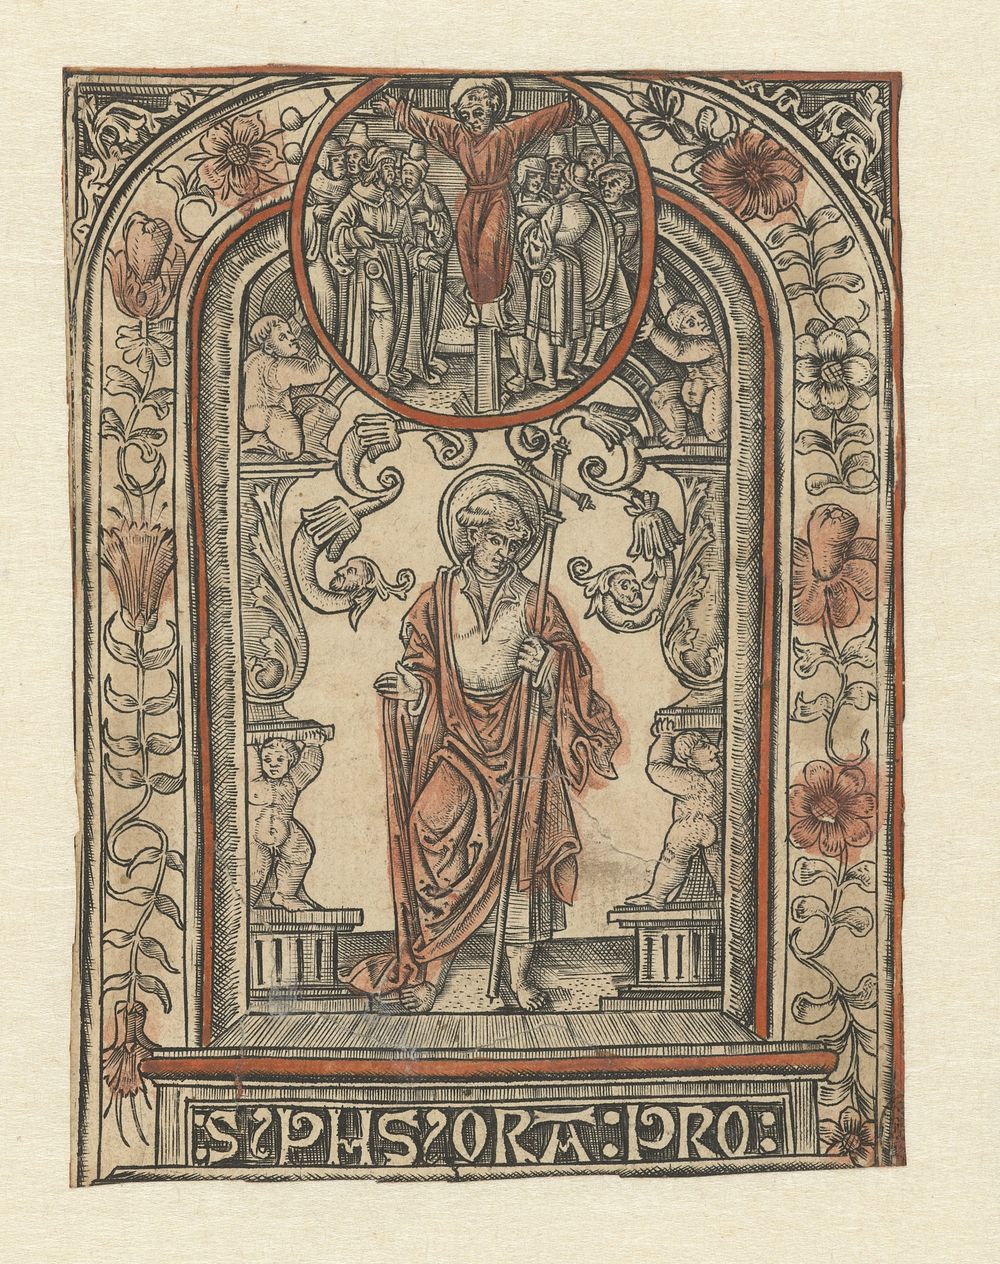 De apostel Philippus en zijn martelaarschap (1510 - 1530) by Allaert Claesz and Monogrammist S 16e eeuw